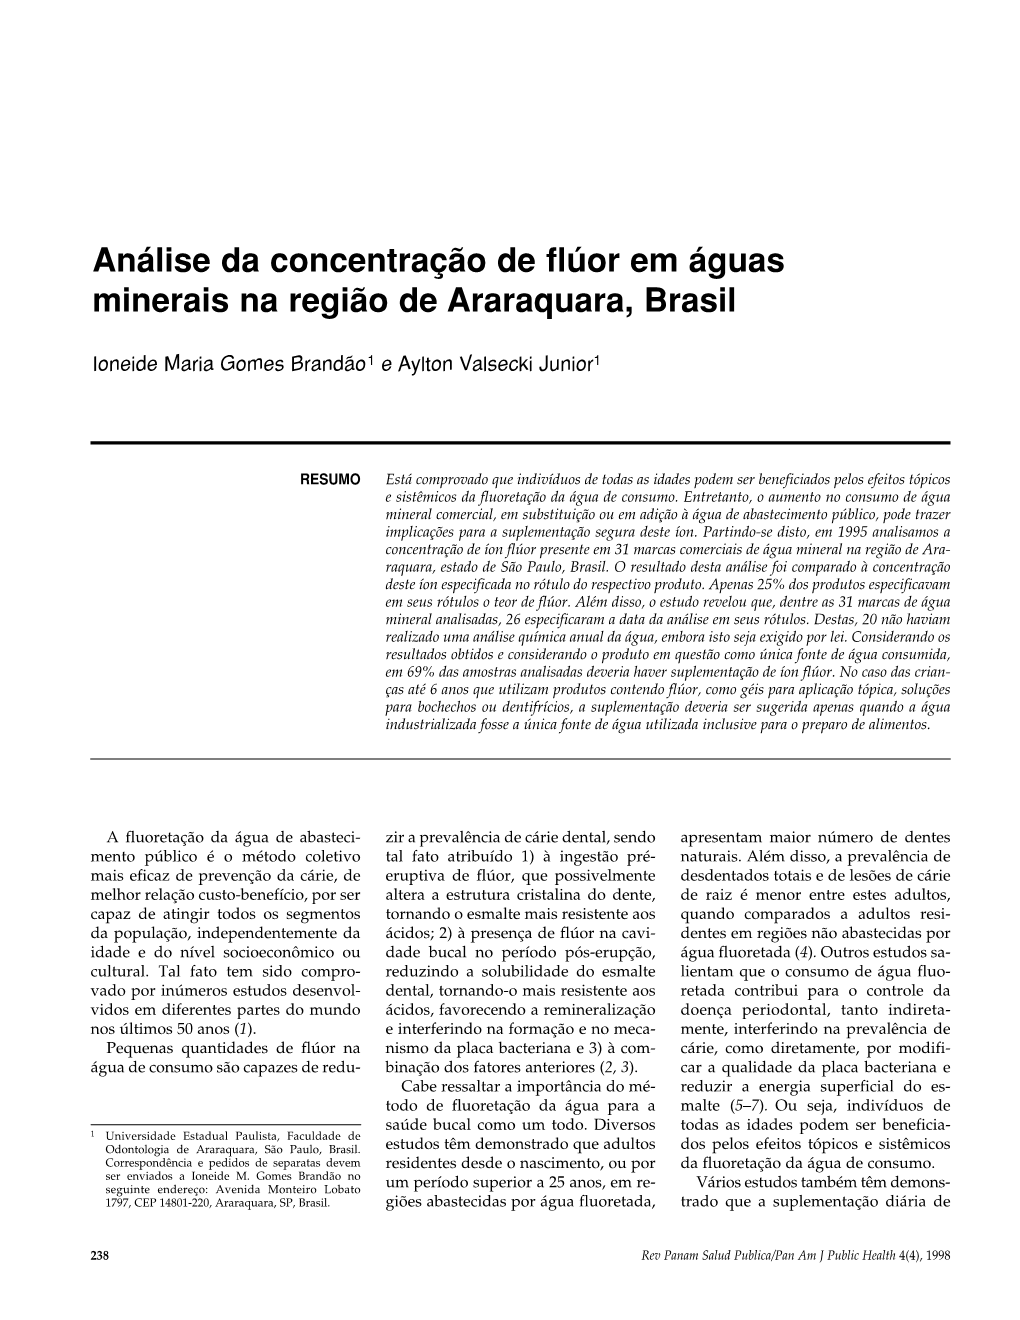 Análise Da Concentração De Flúor Em Águas Minerais Na Região De Araraquara, Brasil